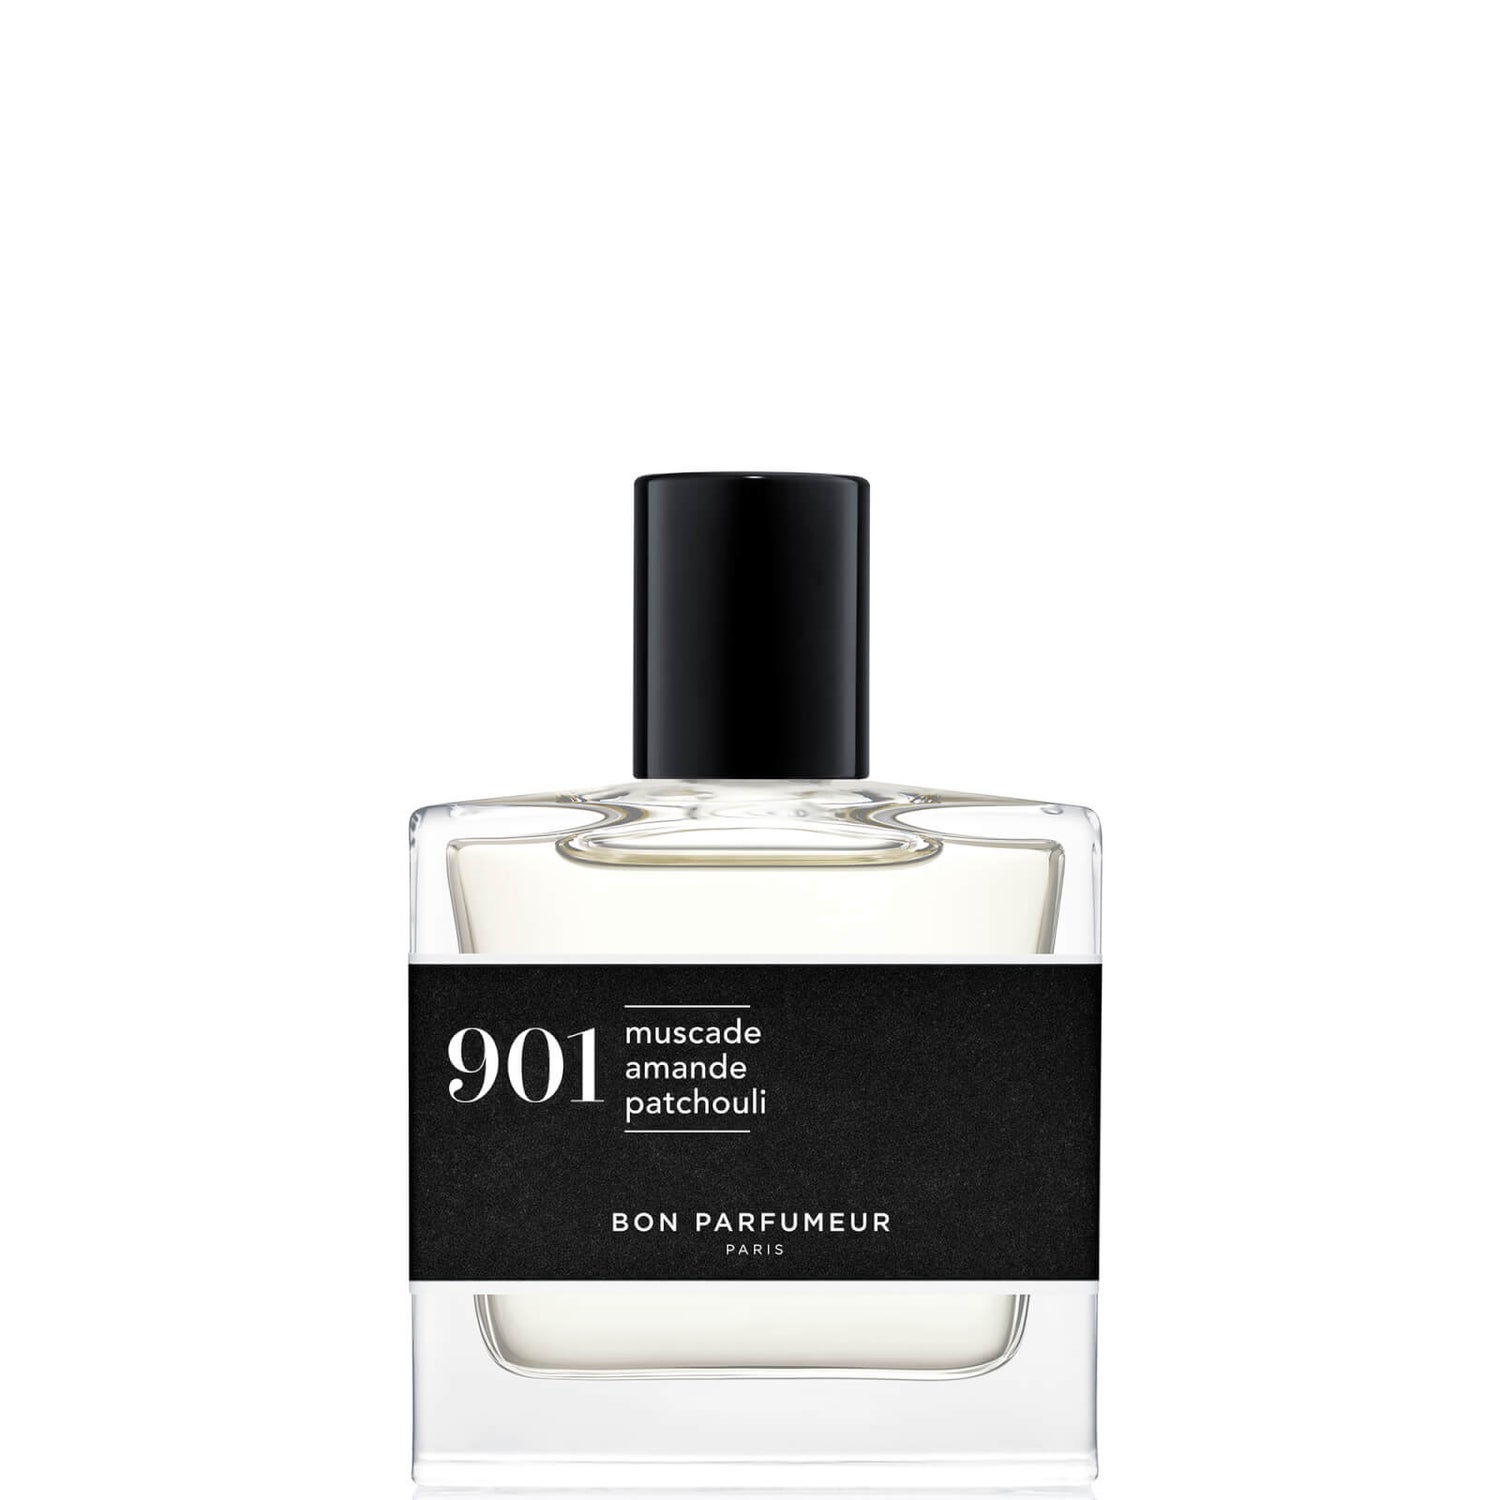 Bon Parfumeur 901 Noce Moscata Mandorla Patchouli Eau de Parfum - 30ml